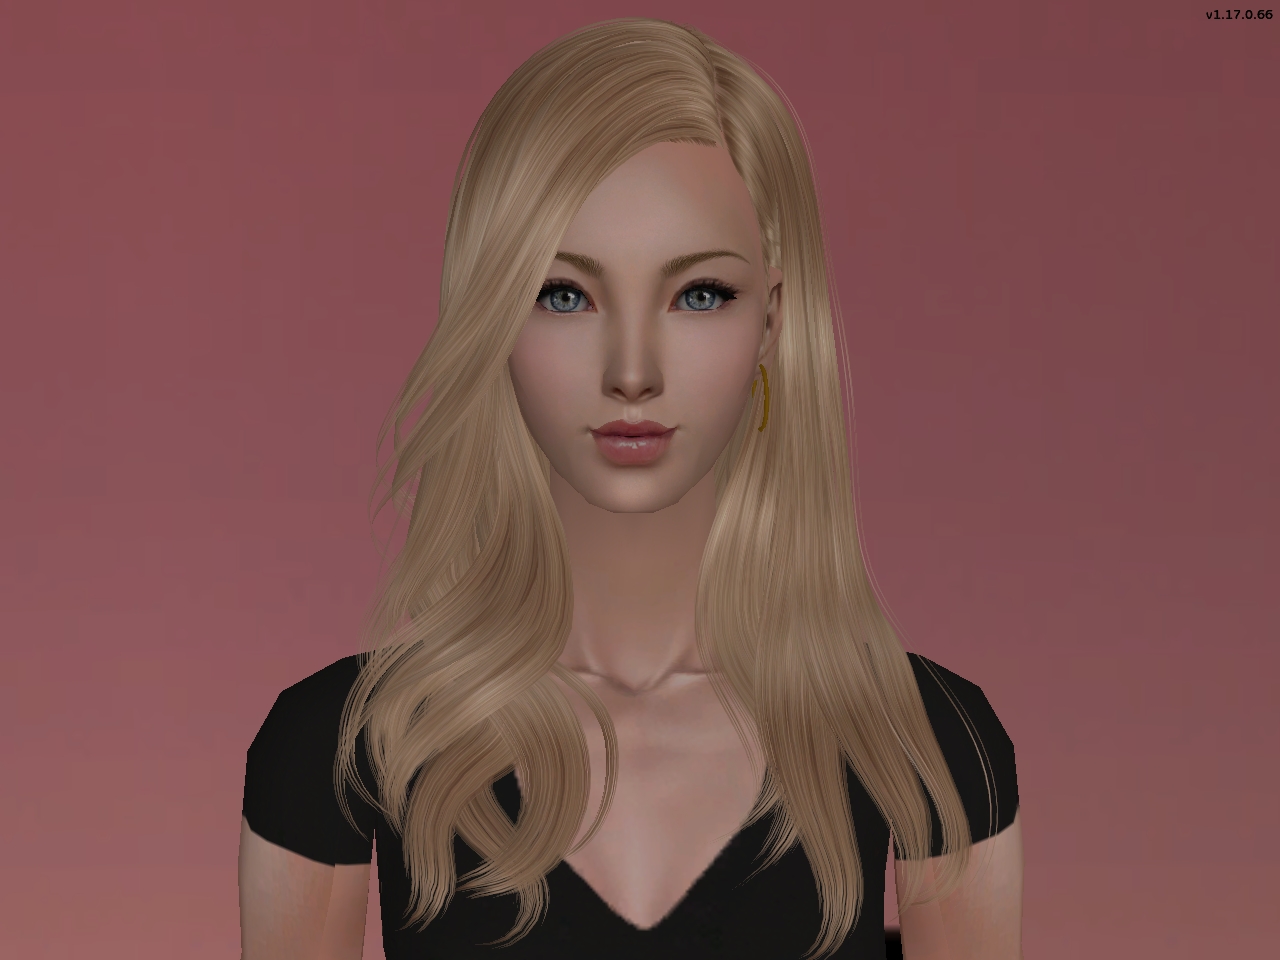 6. Sims 2 Glitch: Blue Hair Flashing in Create-a-Sim - wide 2